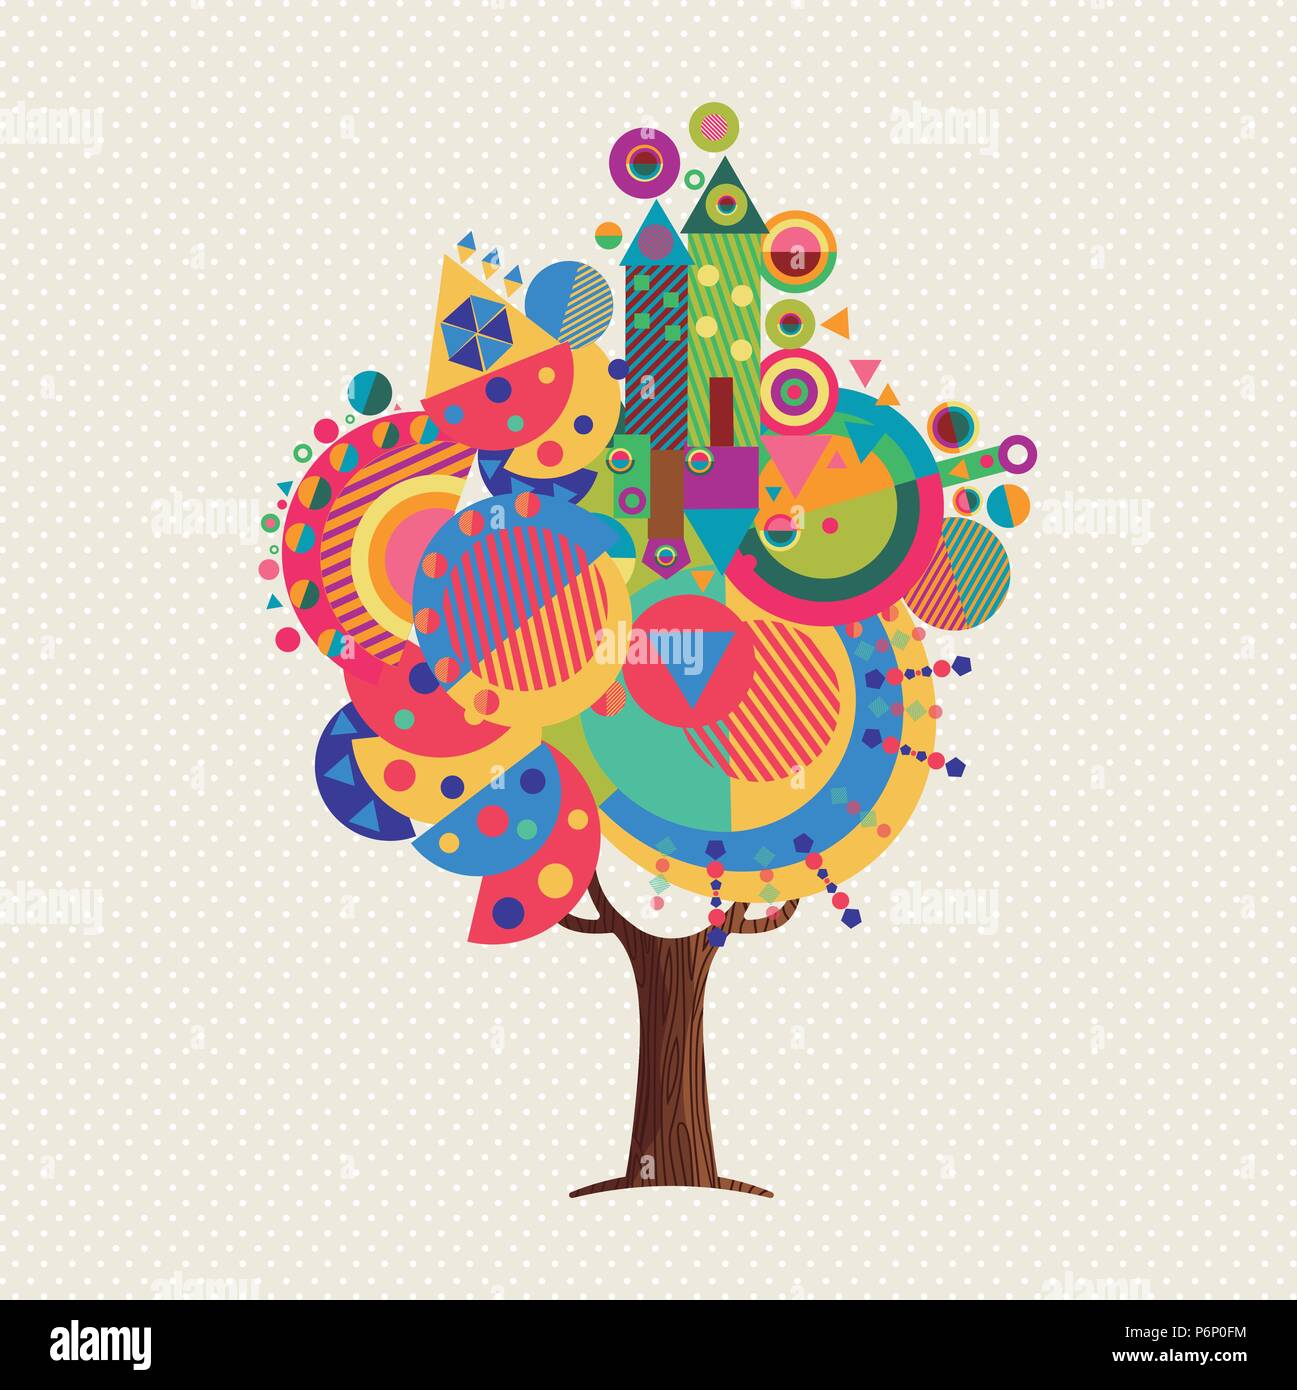 Tree fatta di colorate forme astratte. Colori vivaci icone geometriche e simboli per la divertente idea concettuale. EPS10 vettore. Illustrazione Vettoriale